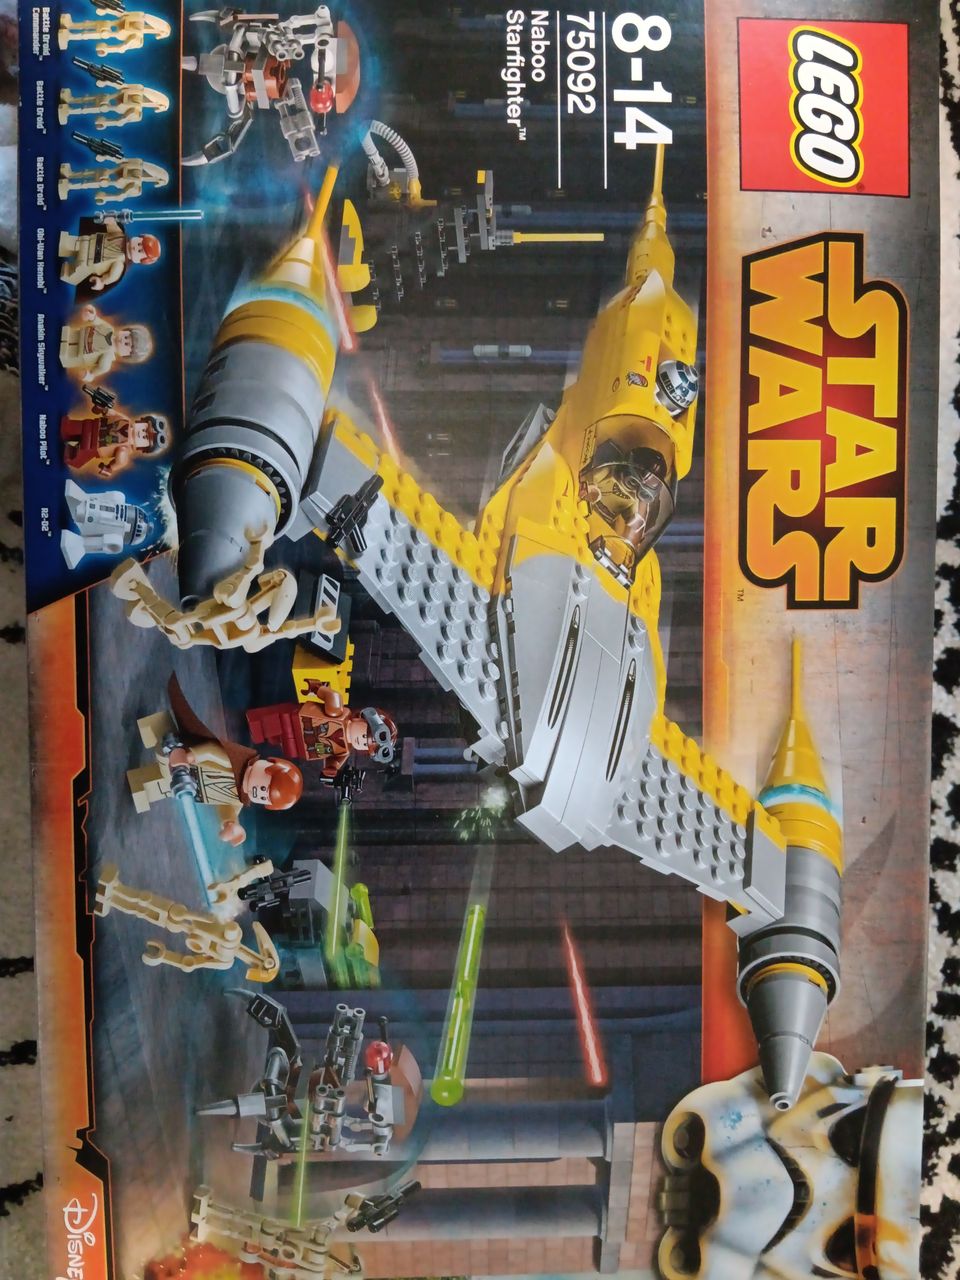 Lego star wars 75092